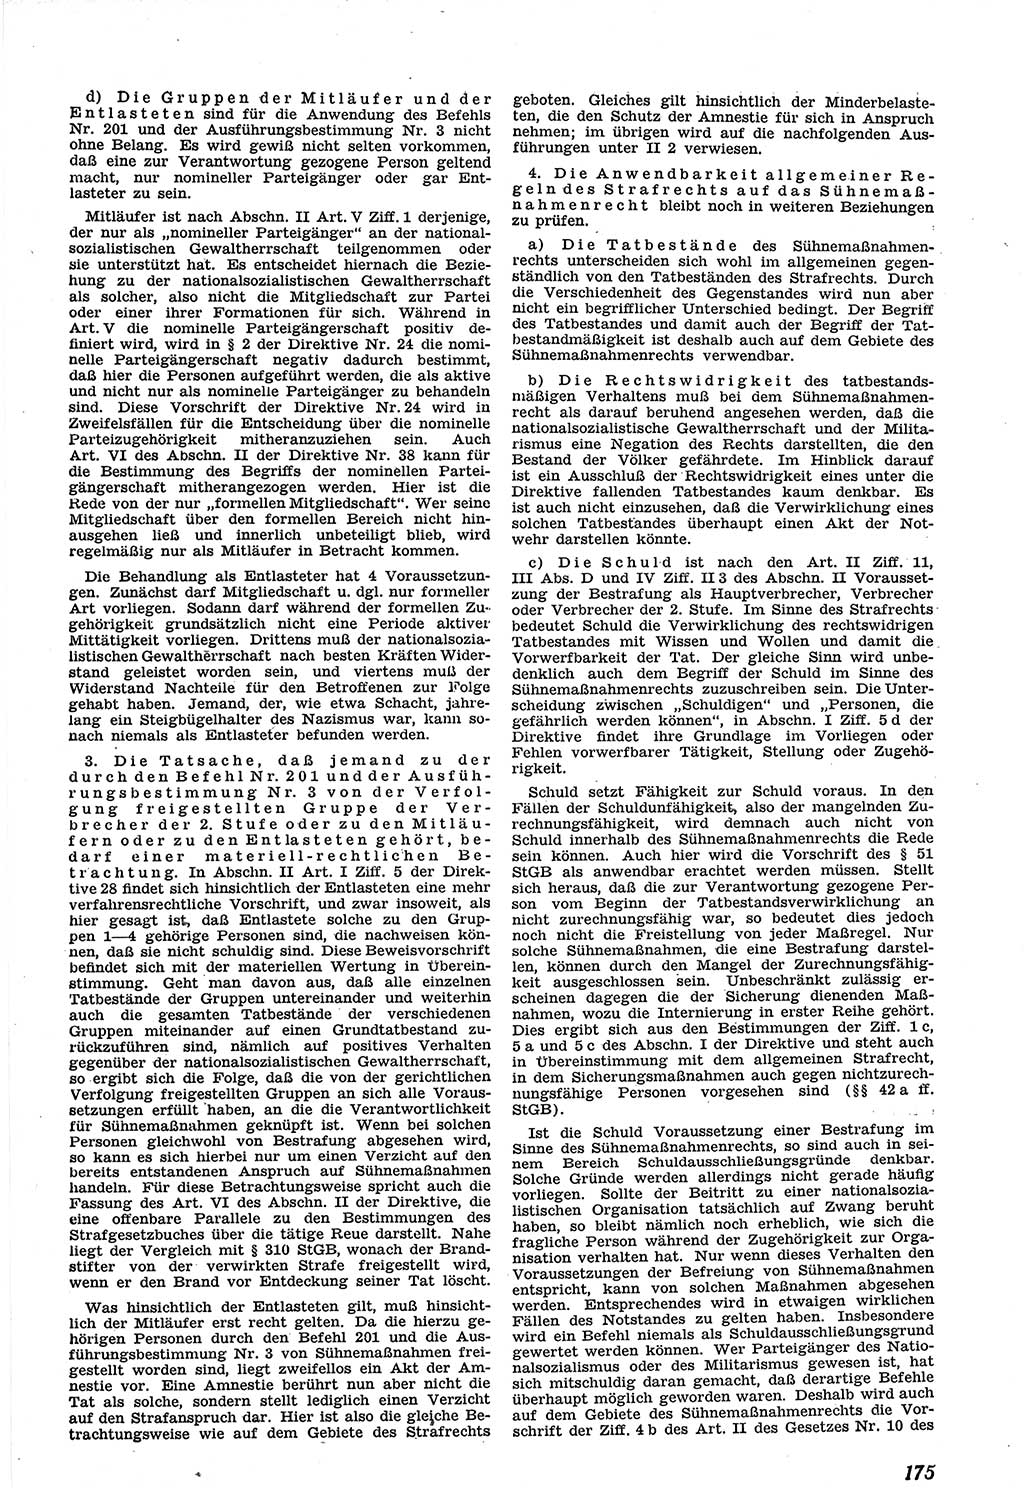 Neue Justiz (NJ), Zeitschrift für Recht und Rechtswissenschaft [Sowjetische Besatzungszone (SBZ) Deutschland], 1. Jahrgang 1947, Seite 175 (NJ SBZ Dtl. 1947, S. 175)